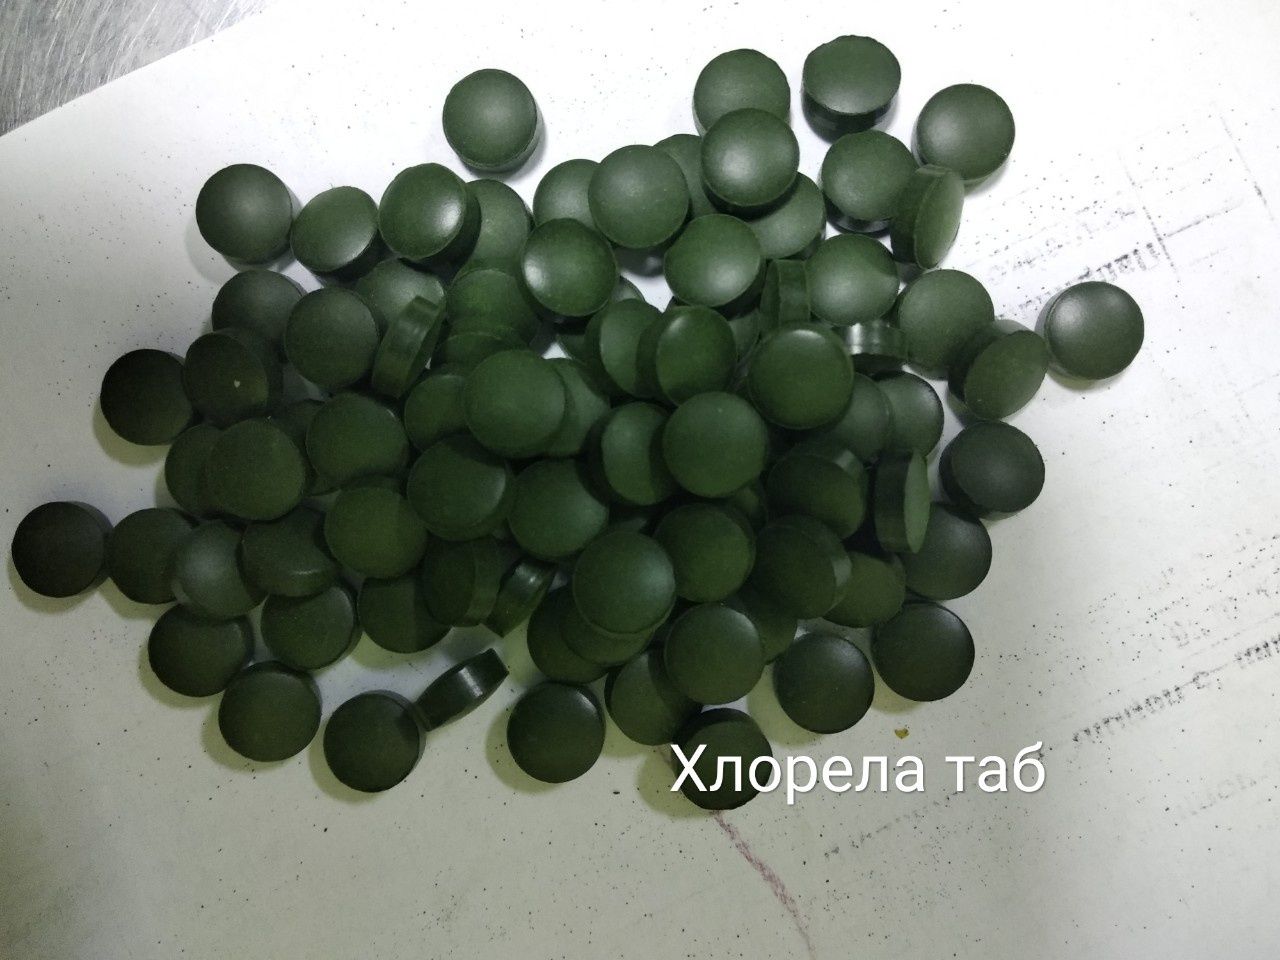 Хлорелла сине-зелёная водоросль хлорофилипт